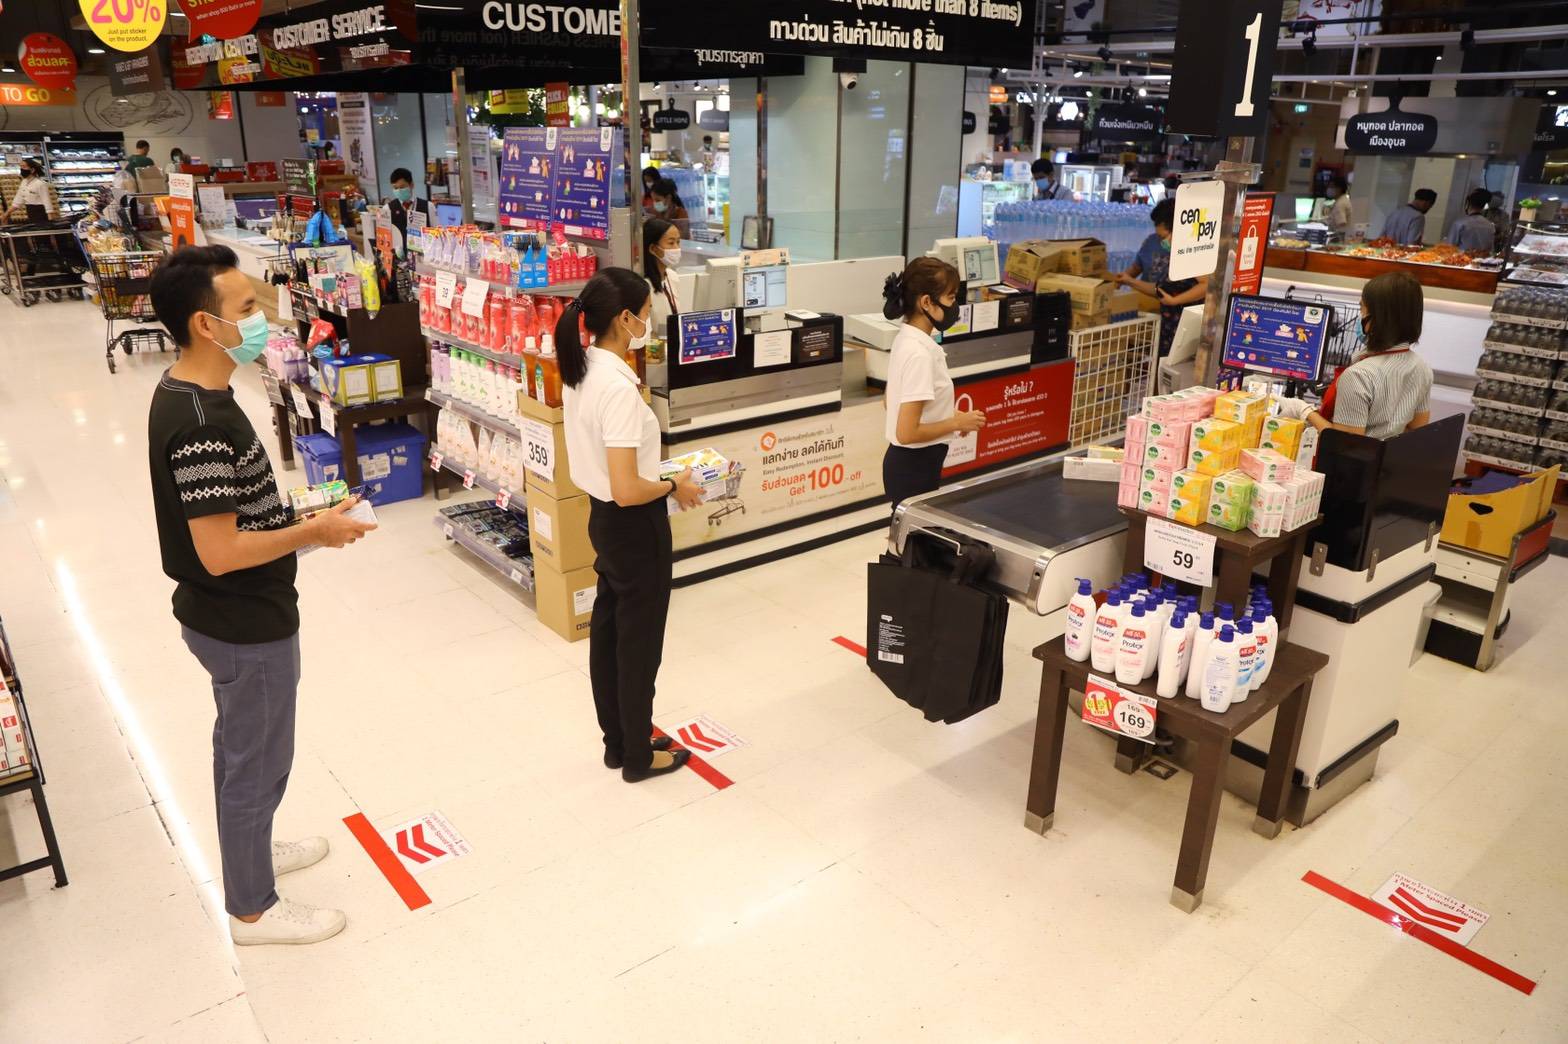 ภาพข่าว: ท็อปส์ แฟมิลี่มาร์ท และมัทสึโมโตะคิโยชิ เพิ่มมาตรการ Social distancing ซื้อของ จ่ายเงิน ยืนห่างกัน 1 เมตร